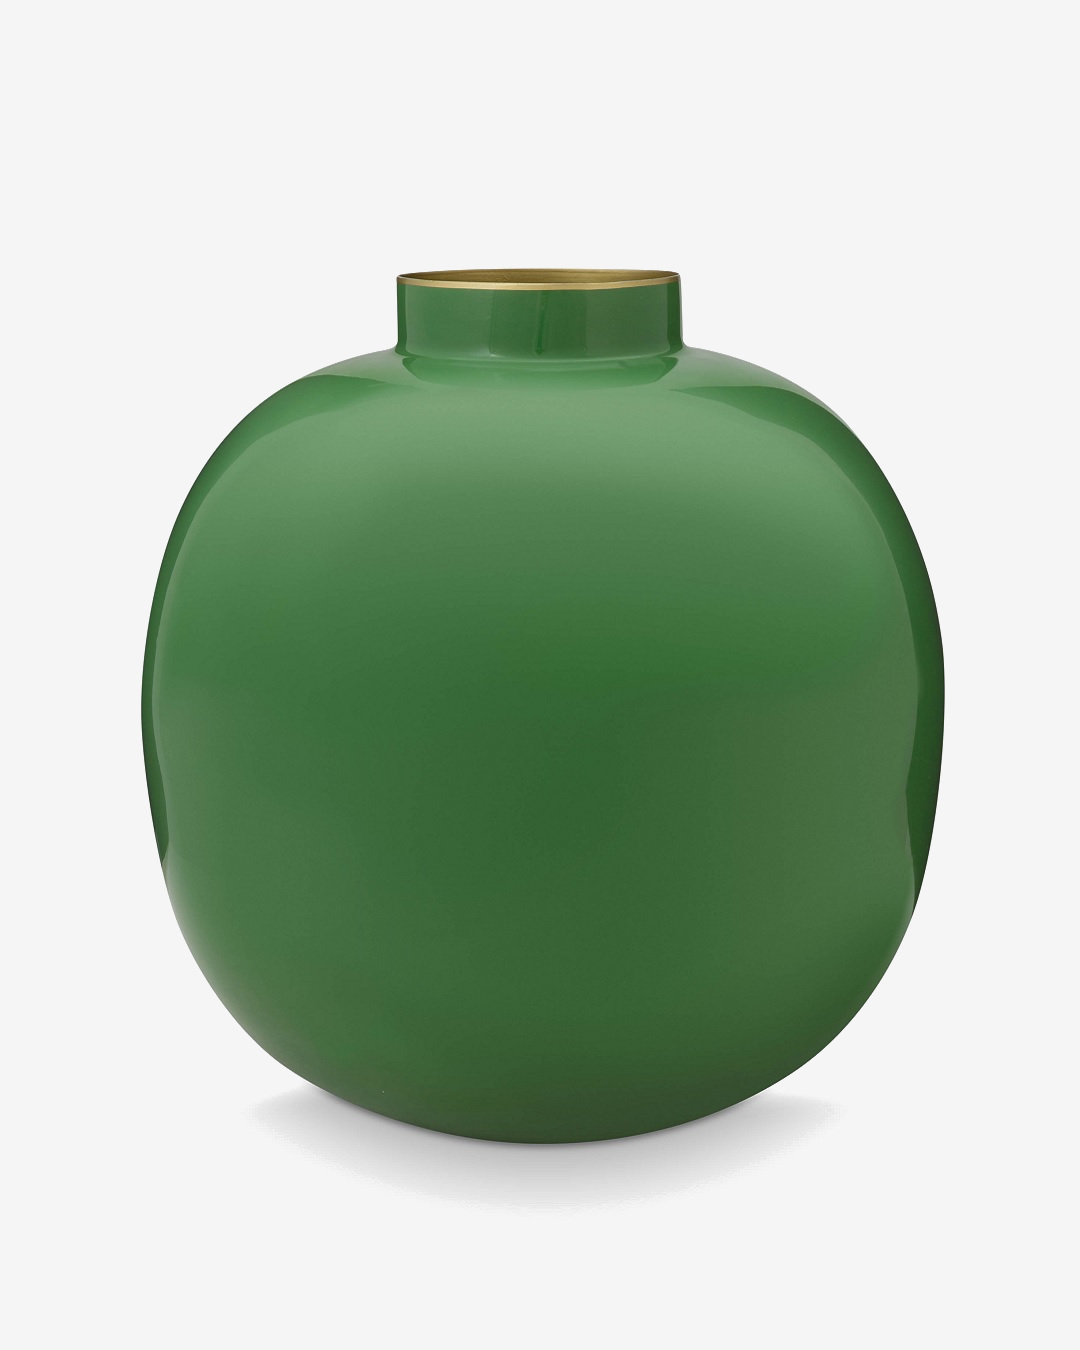 Green metal round vase